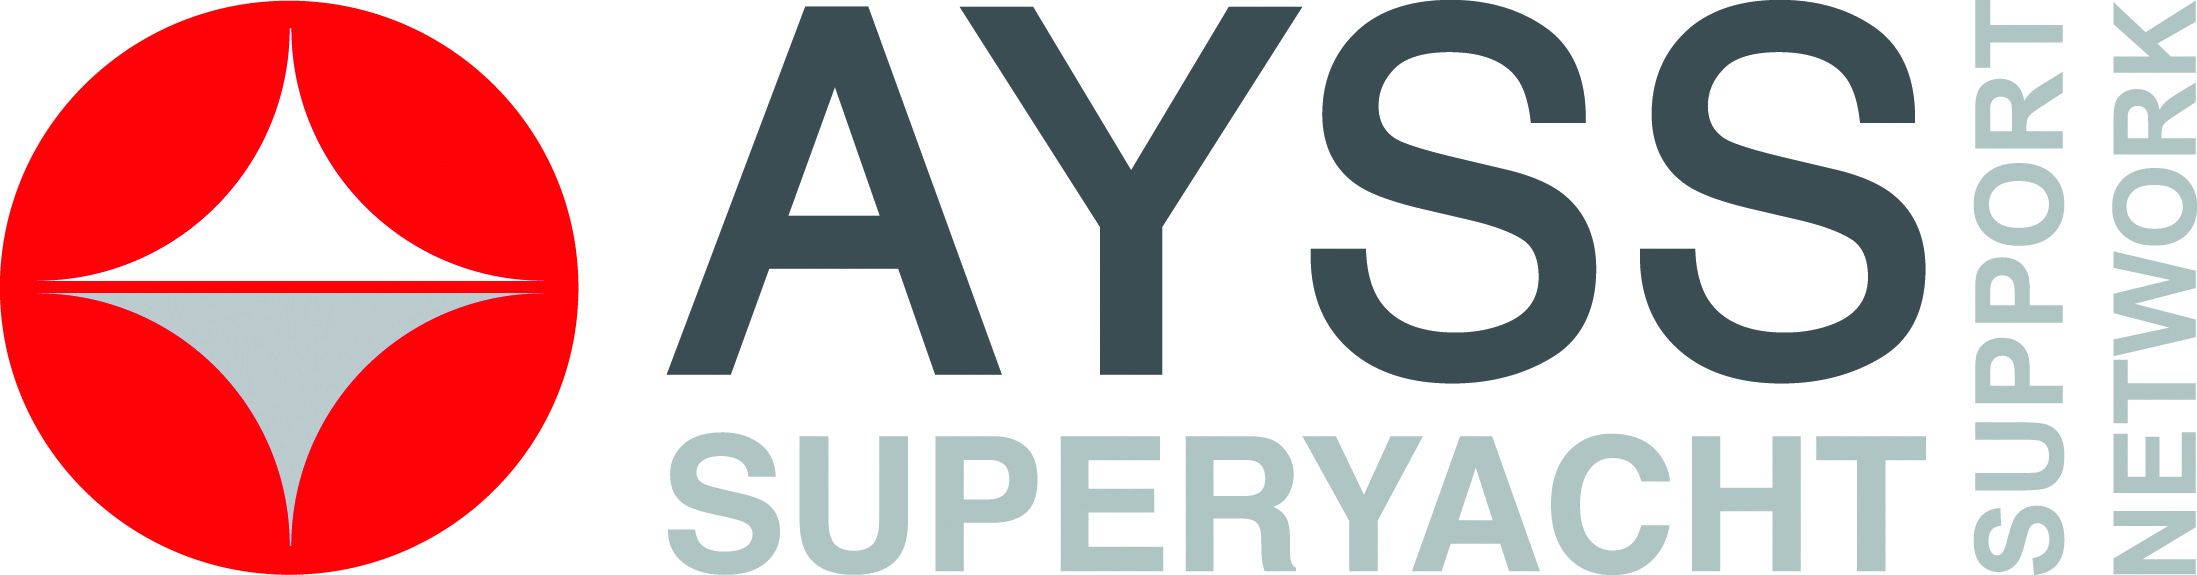 AYSS Logo